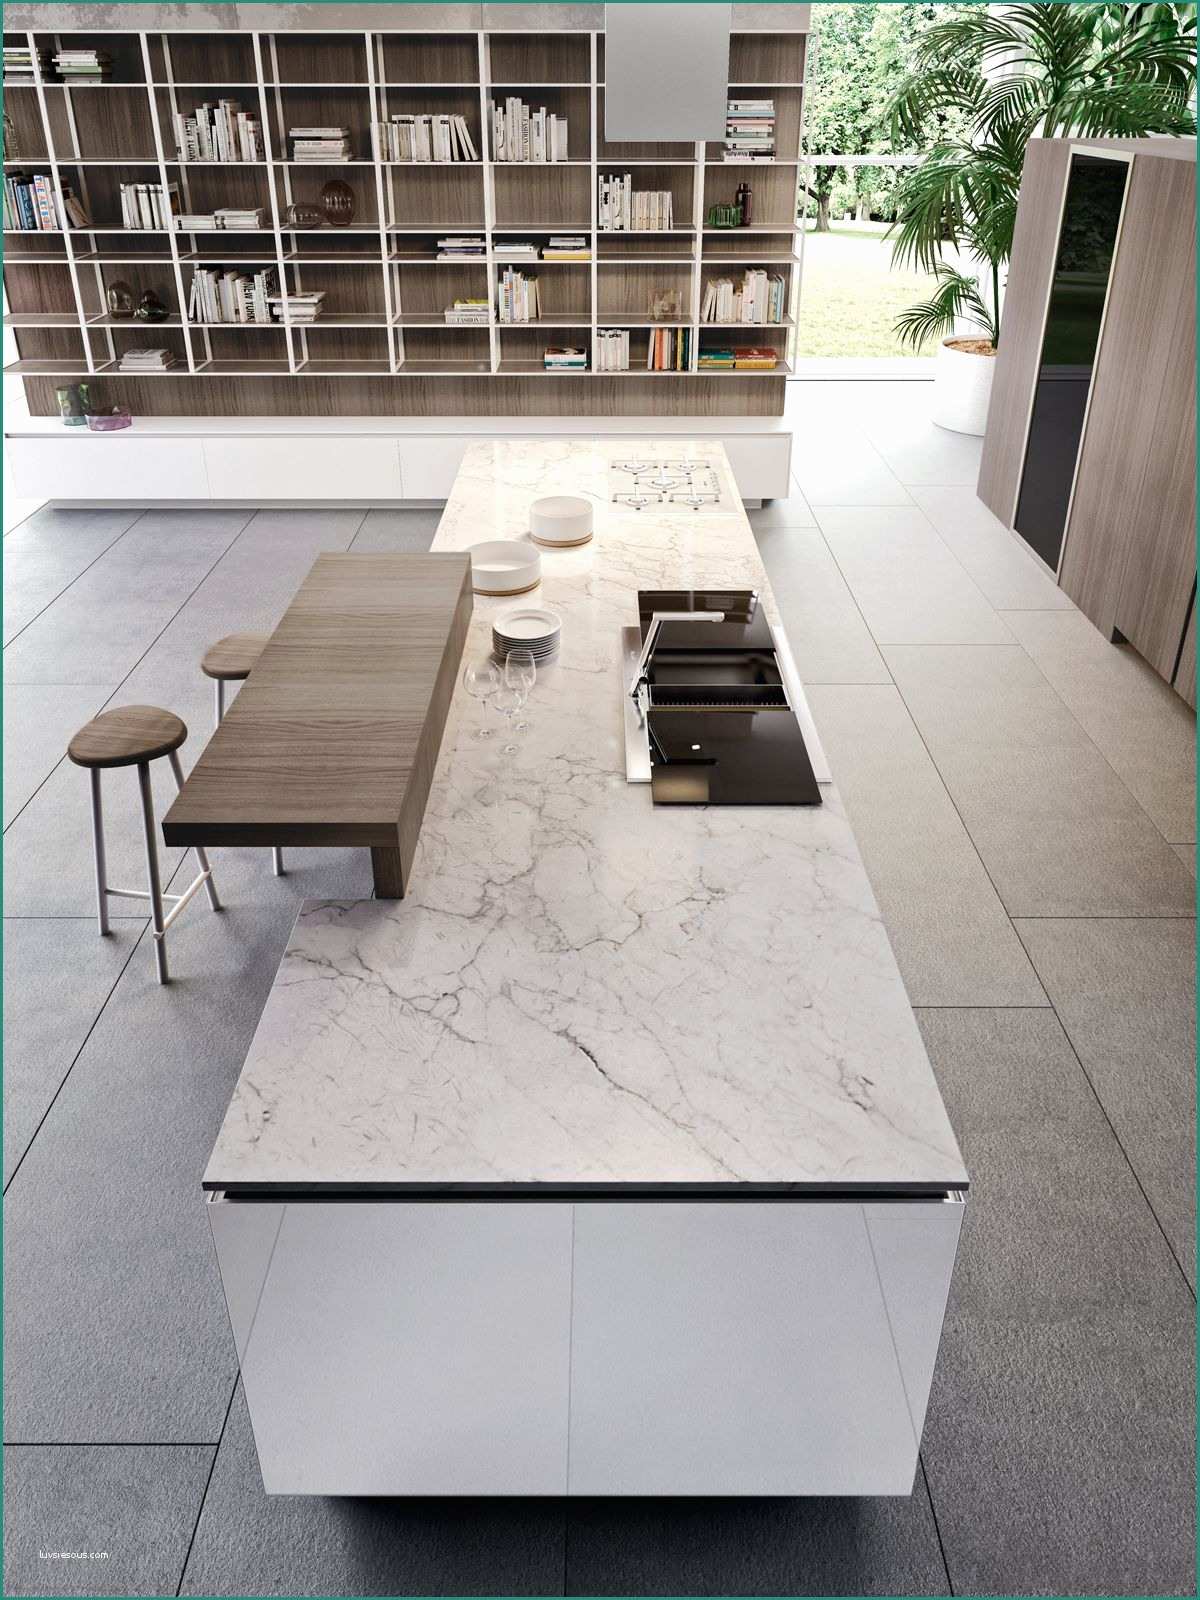 Cucine Moderne Dwg E Risultati Immagini Per Marmo Bianco Carrara Cucina